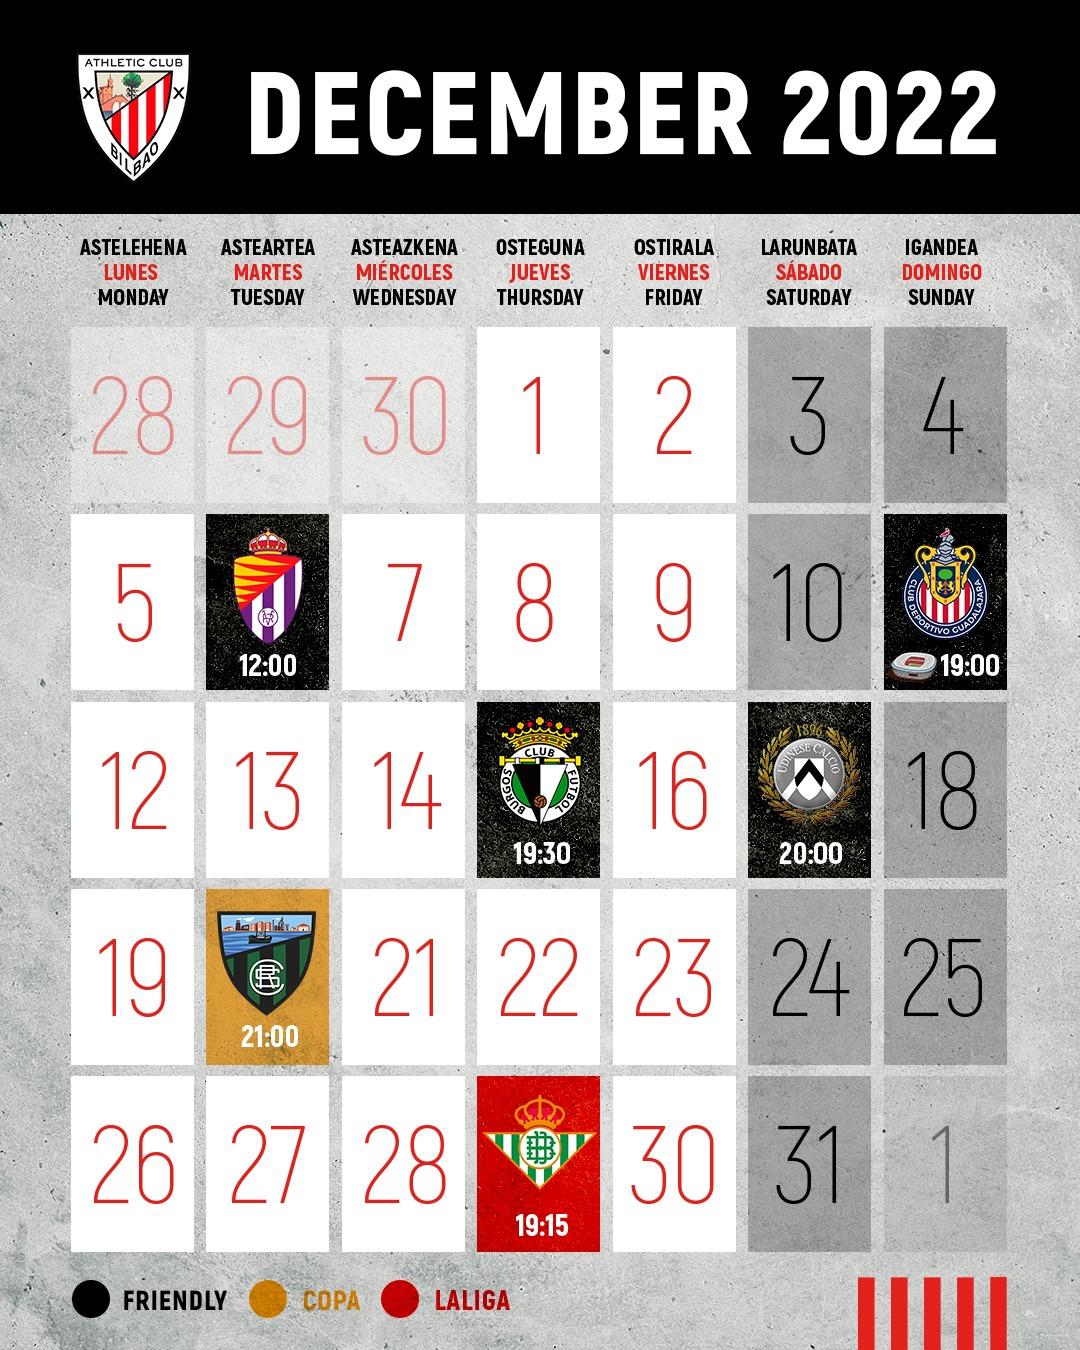 The Lions' December Fixture Schedule